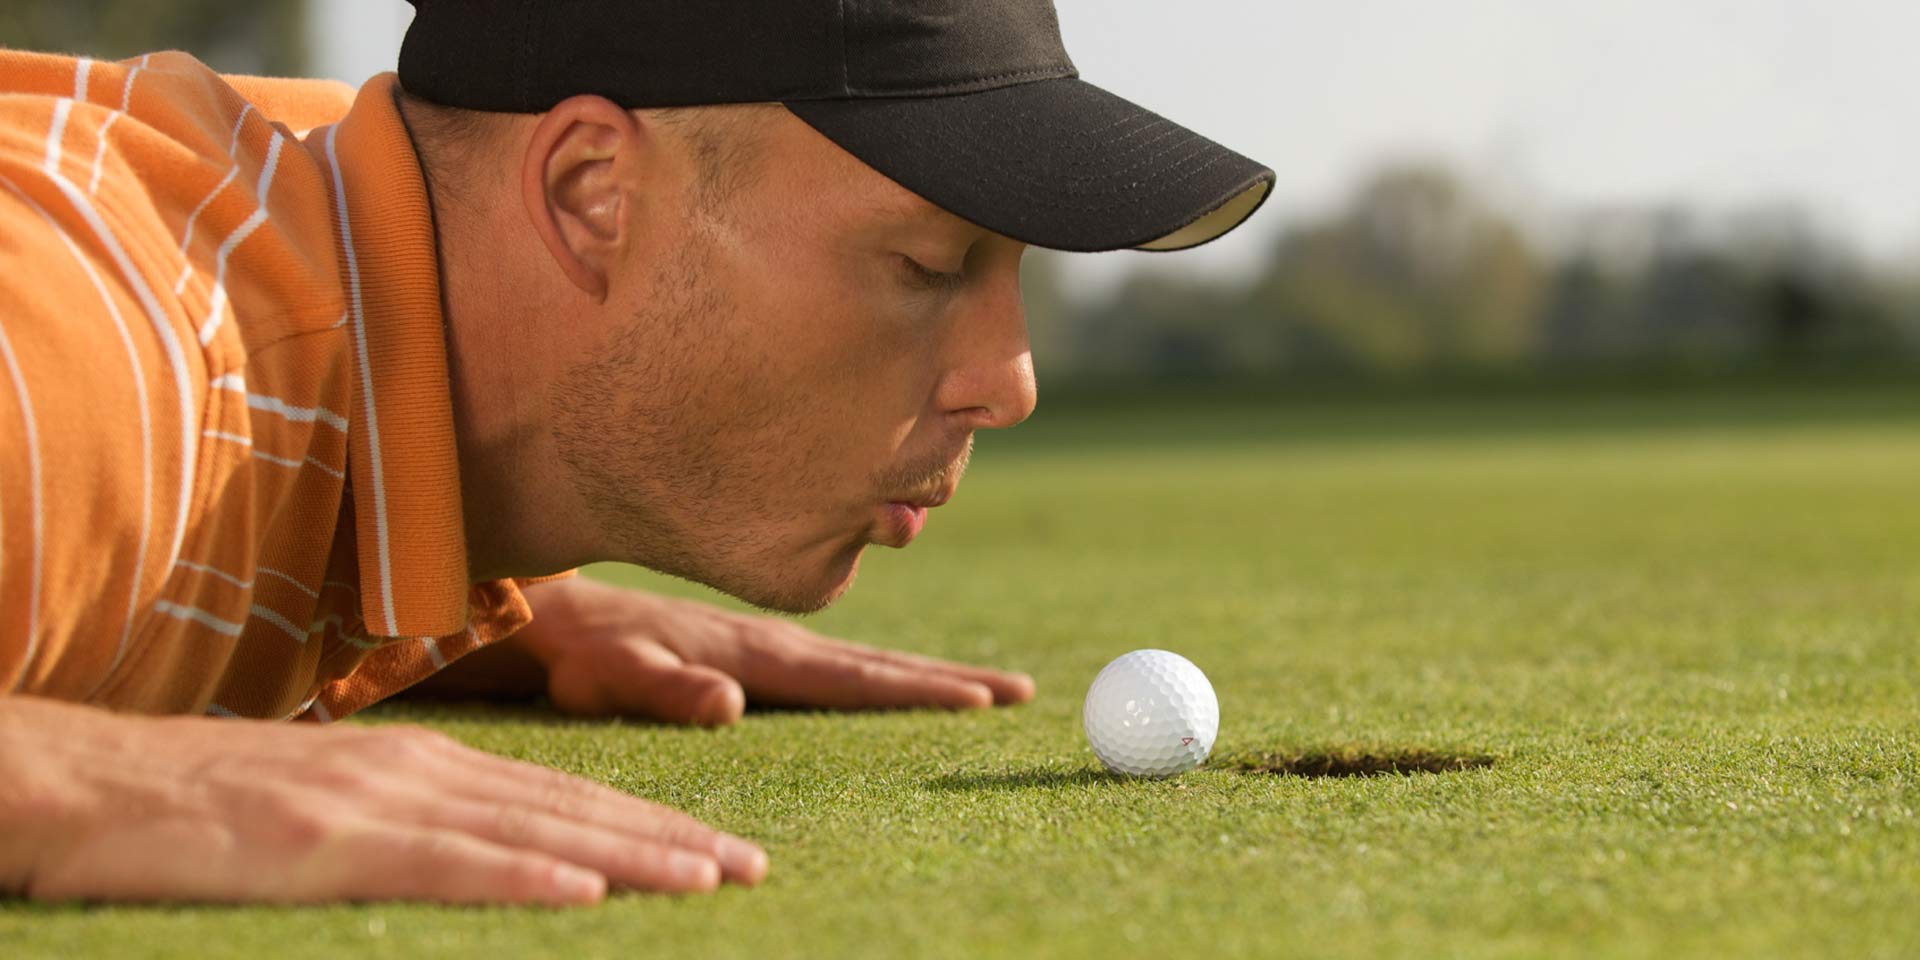 Man putting a golf ball